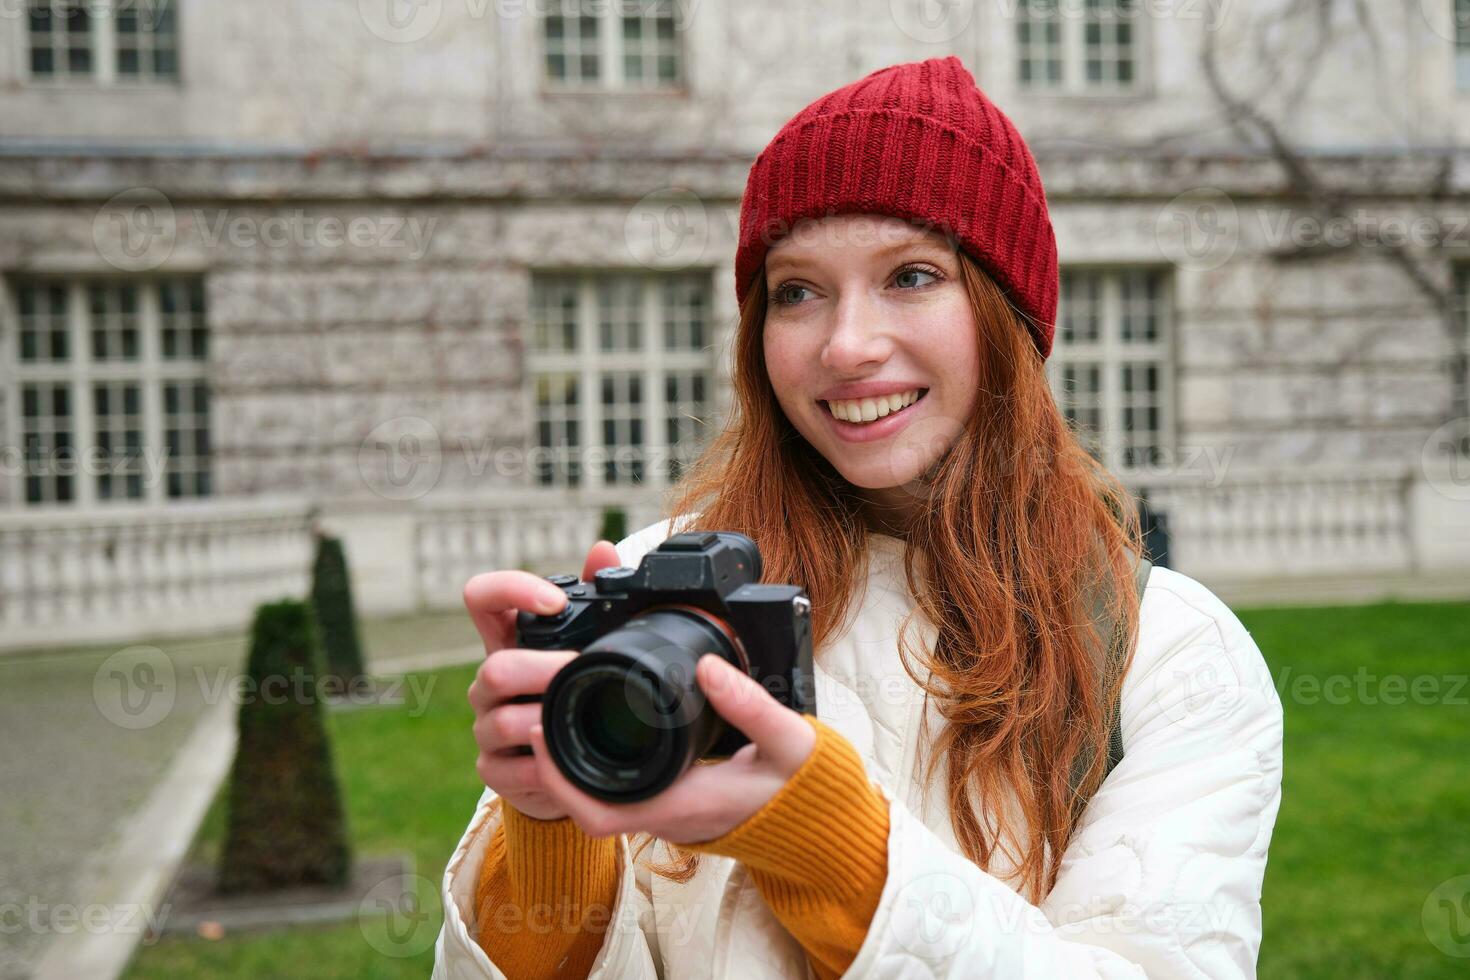 contento testa Rossa ragazza turista, prende fotografie, fotografo con professionale telecamera passeggiate in giro città e cattura bellissimo immagini foto